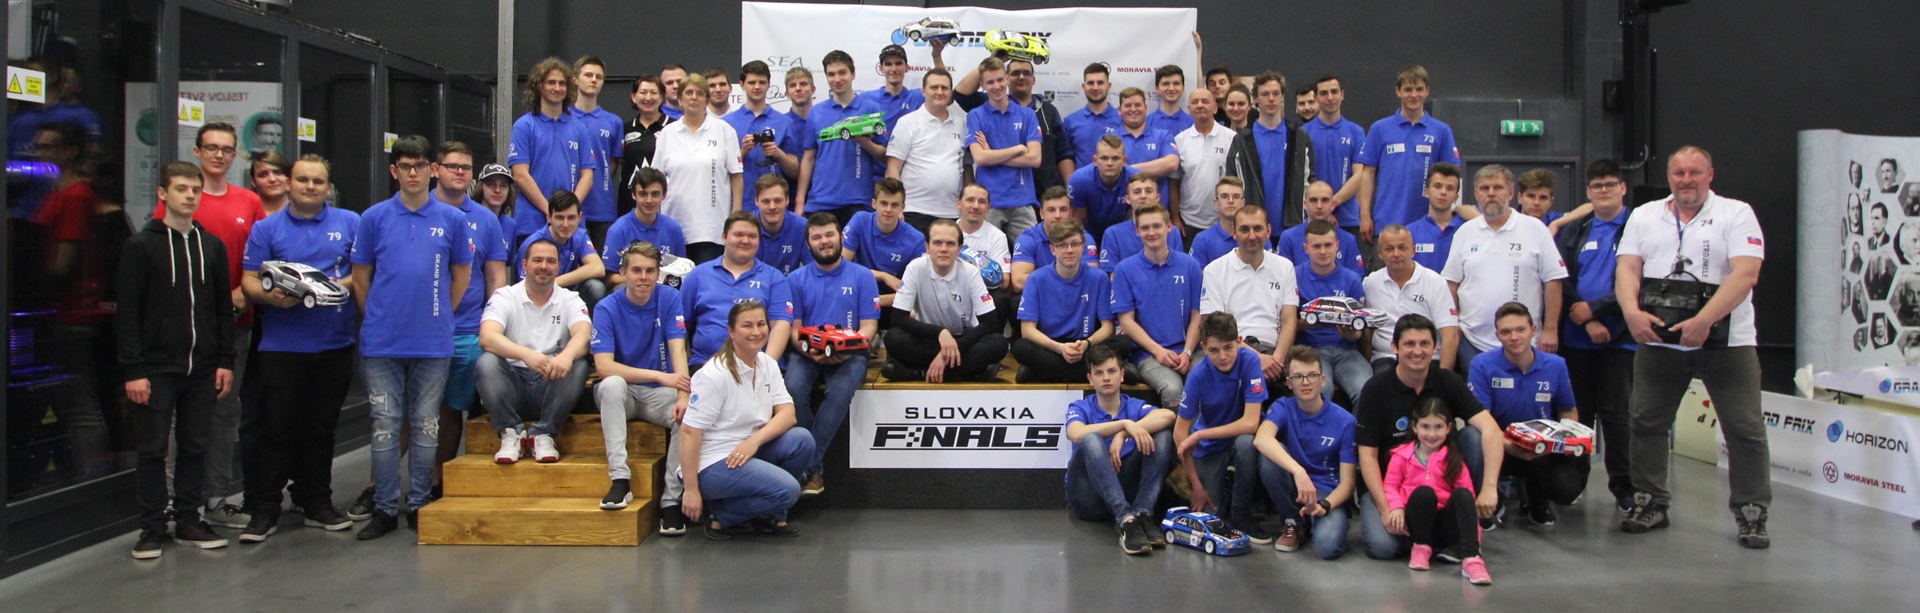 súťažiaci 3. ročníka slovenského kola súťaže RC modelov vodíkových áut